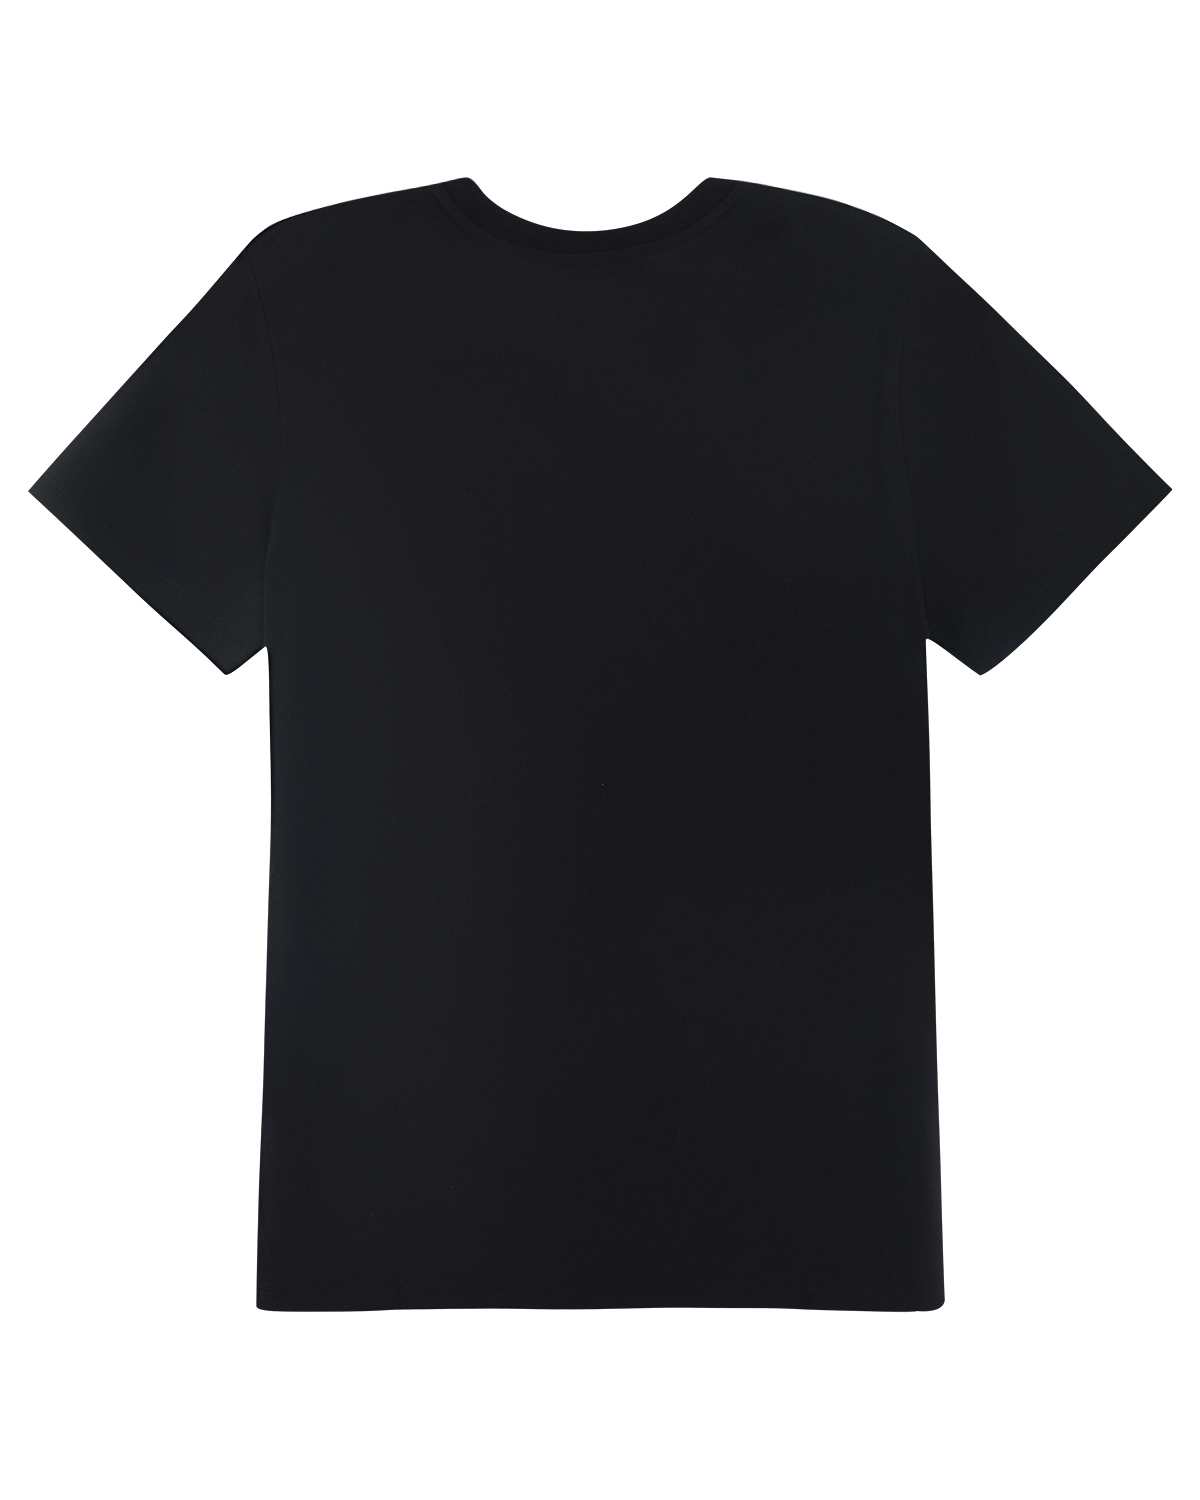 Черная футболка с принтом "медаль" Bikkembergs детская, размер 152, цвет черный - фото 2